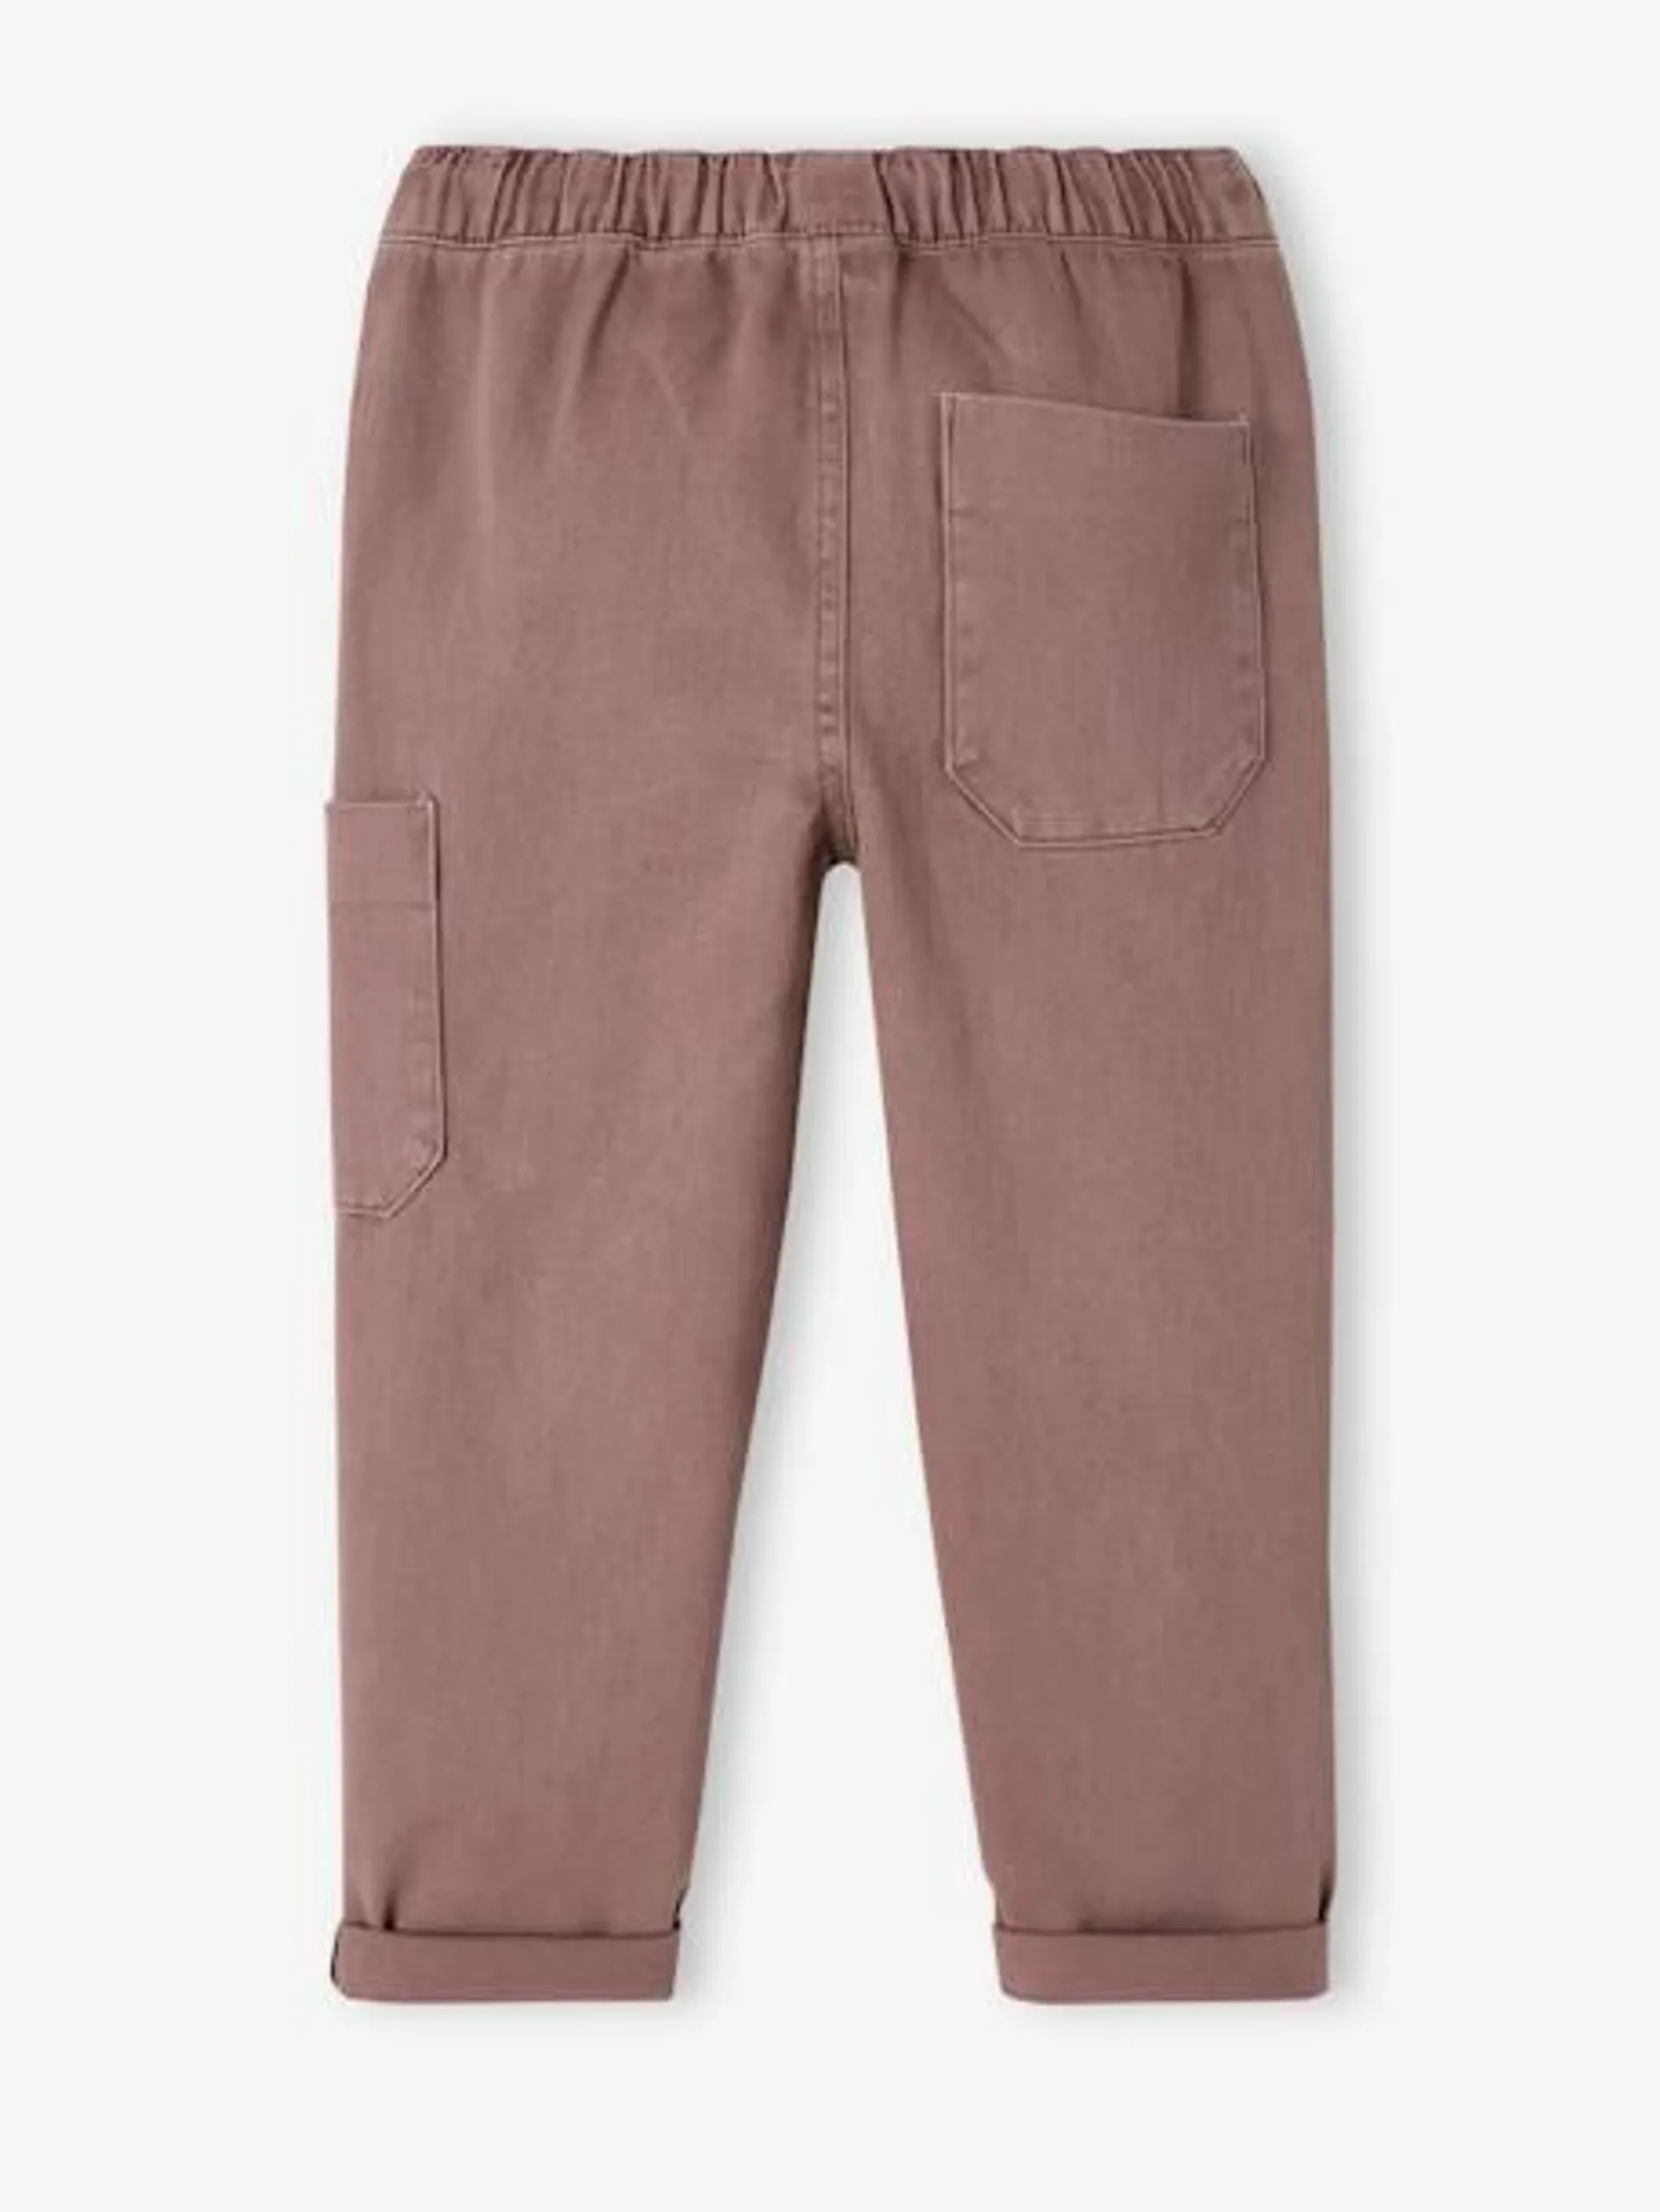 Pantalon cargo couleur garçon - chocolat